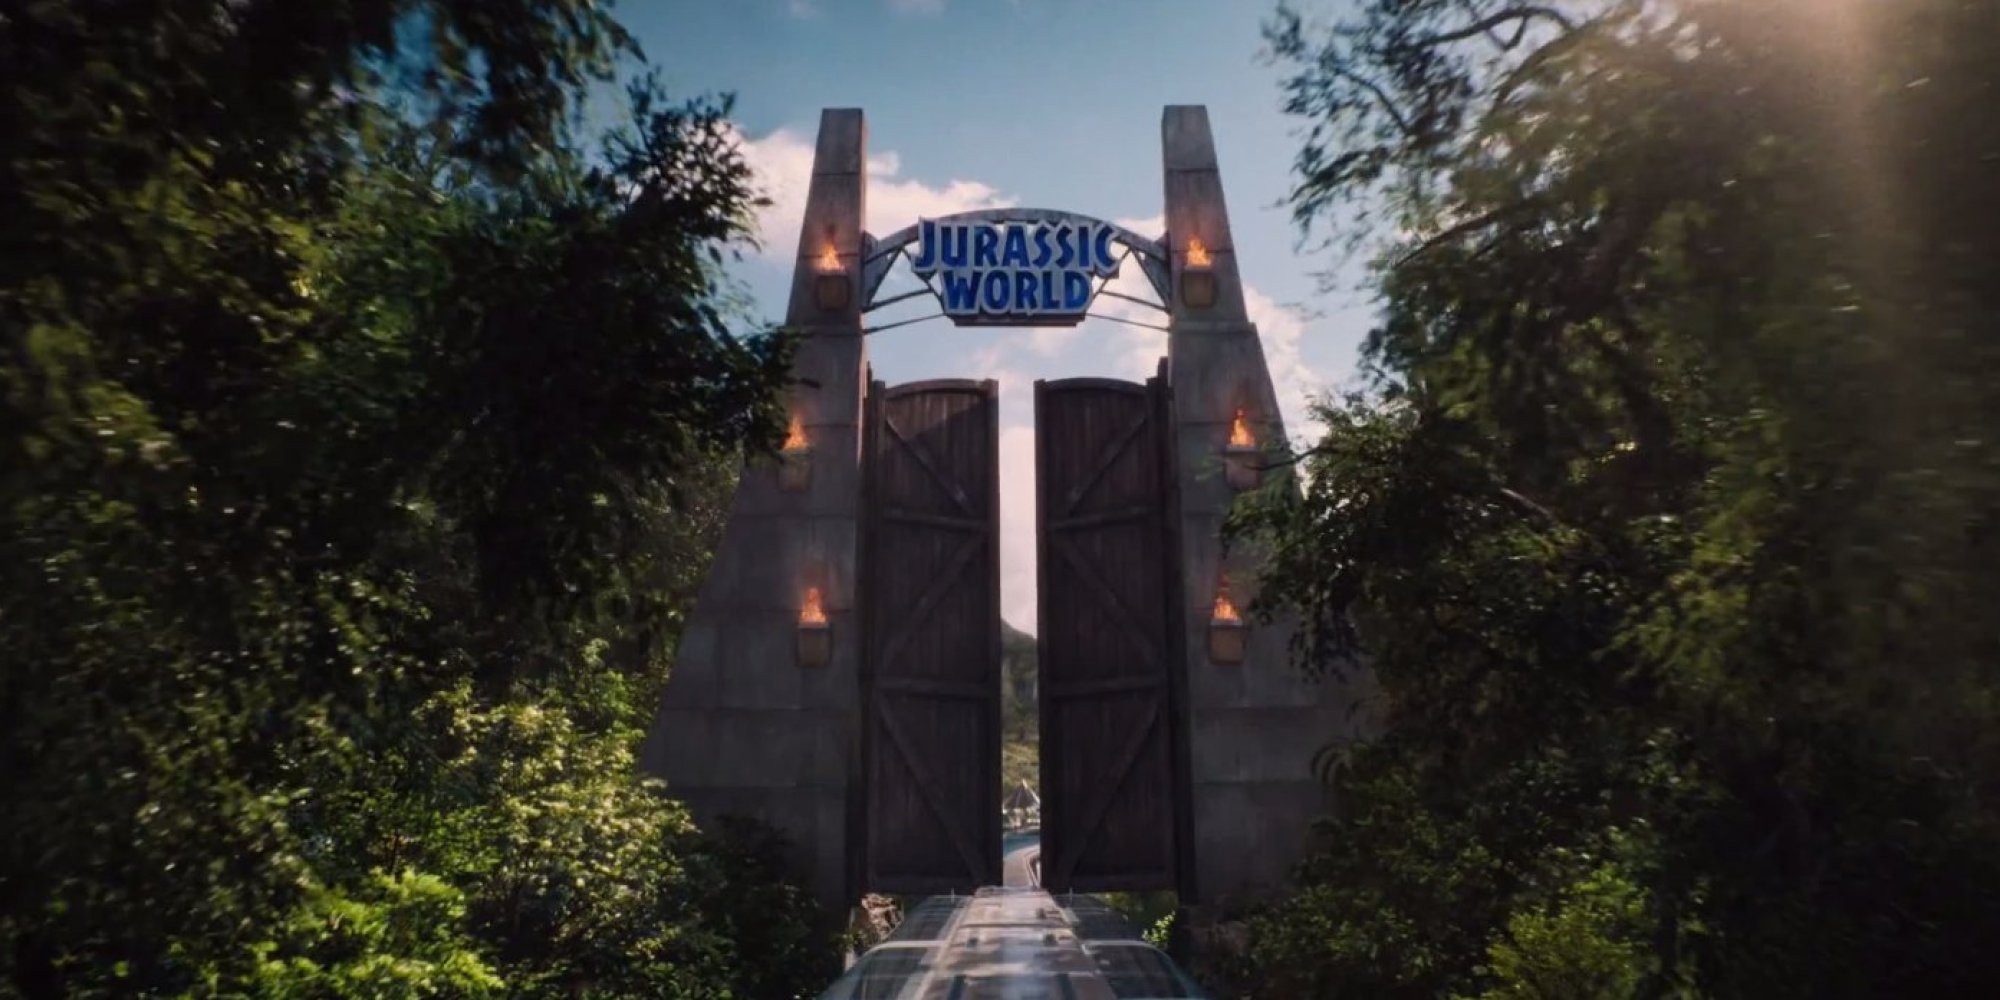 The 'Jurassic World' Teaser Trailer Has Arrived | HuffPost